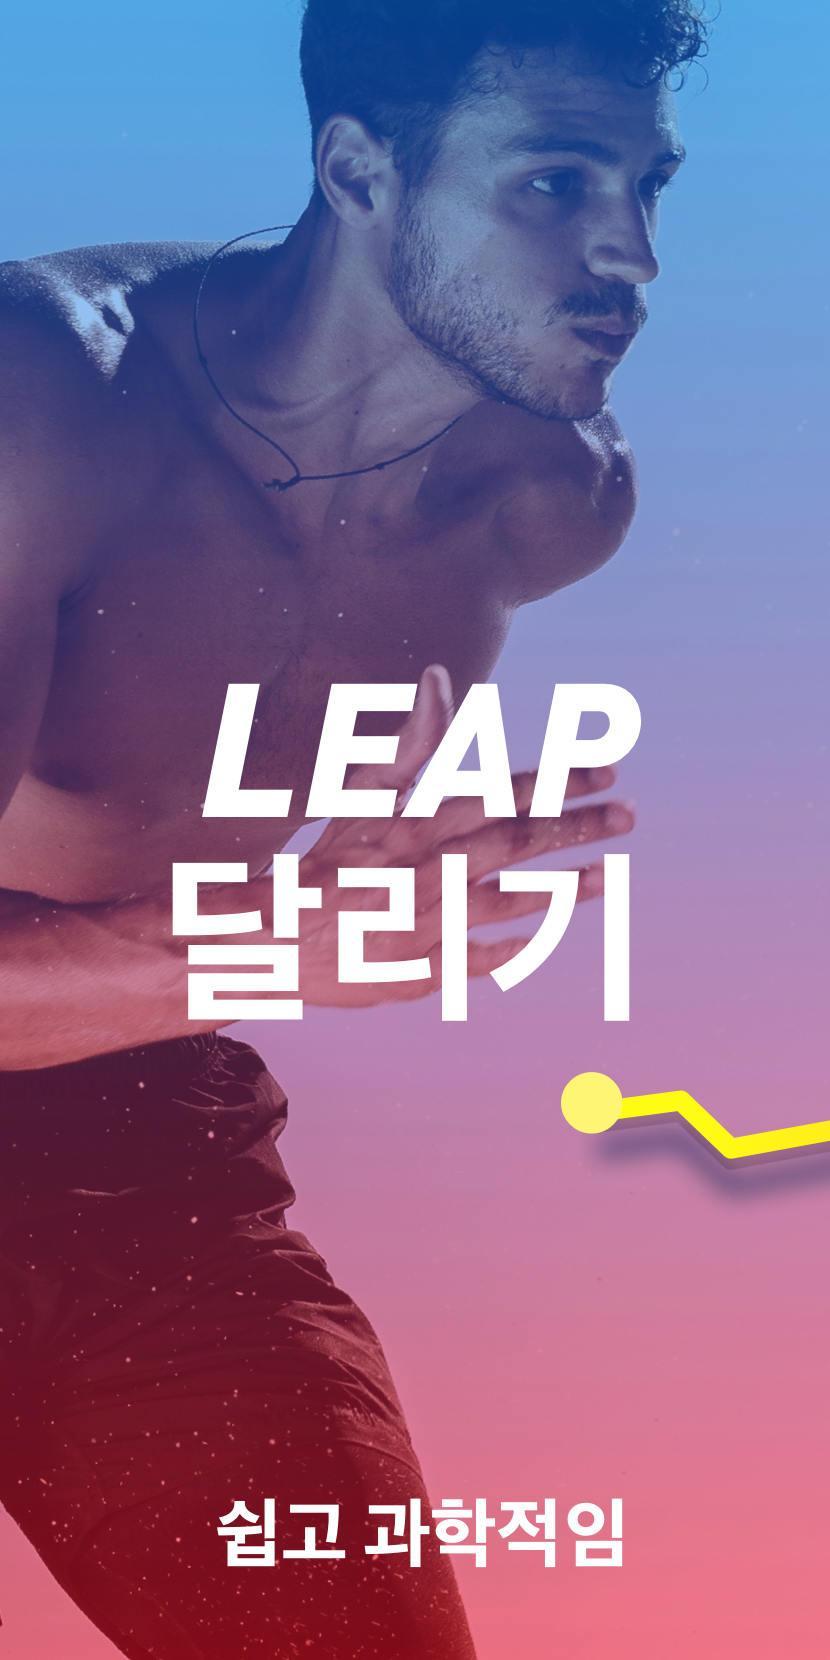 Leap 맵 러너 - 런 트래커, 체중 감량 앱